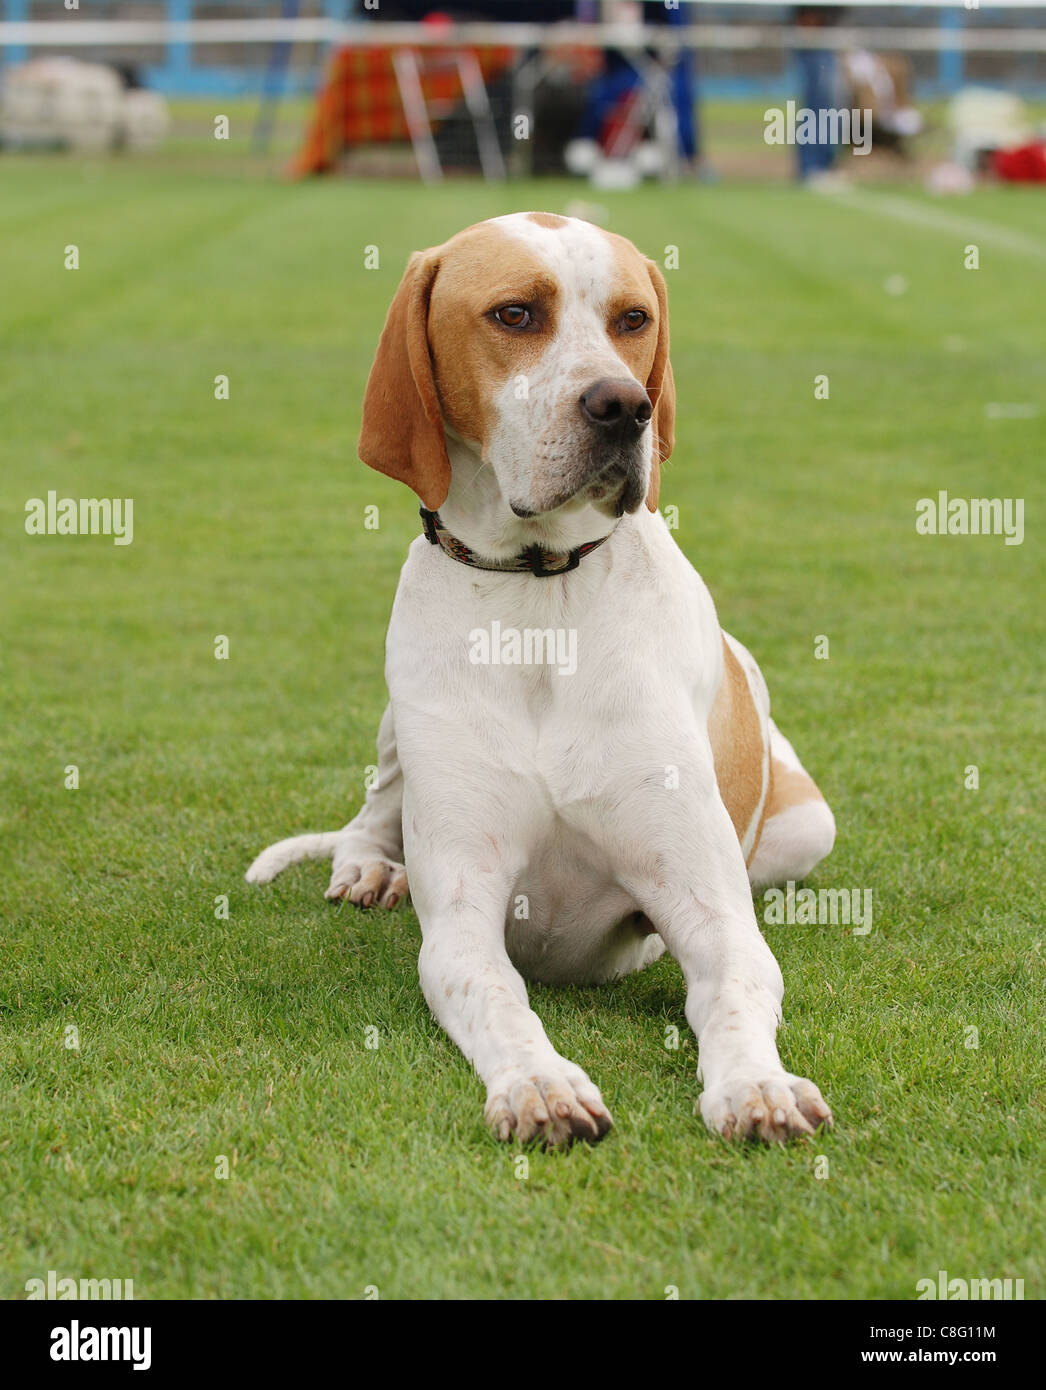 English Pointer dog portrait in garden Stock Photo